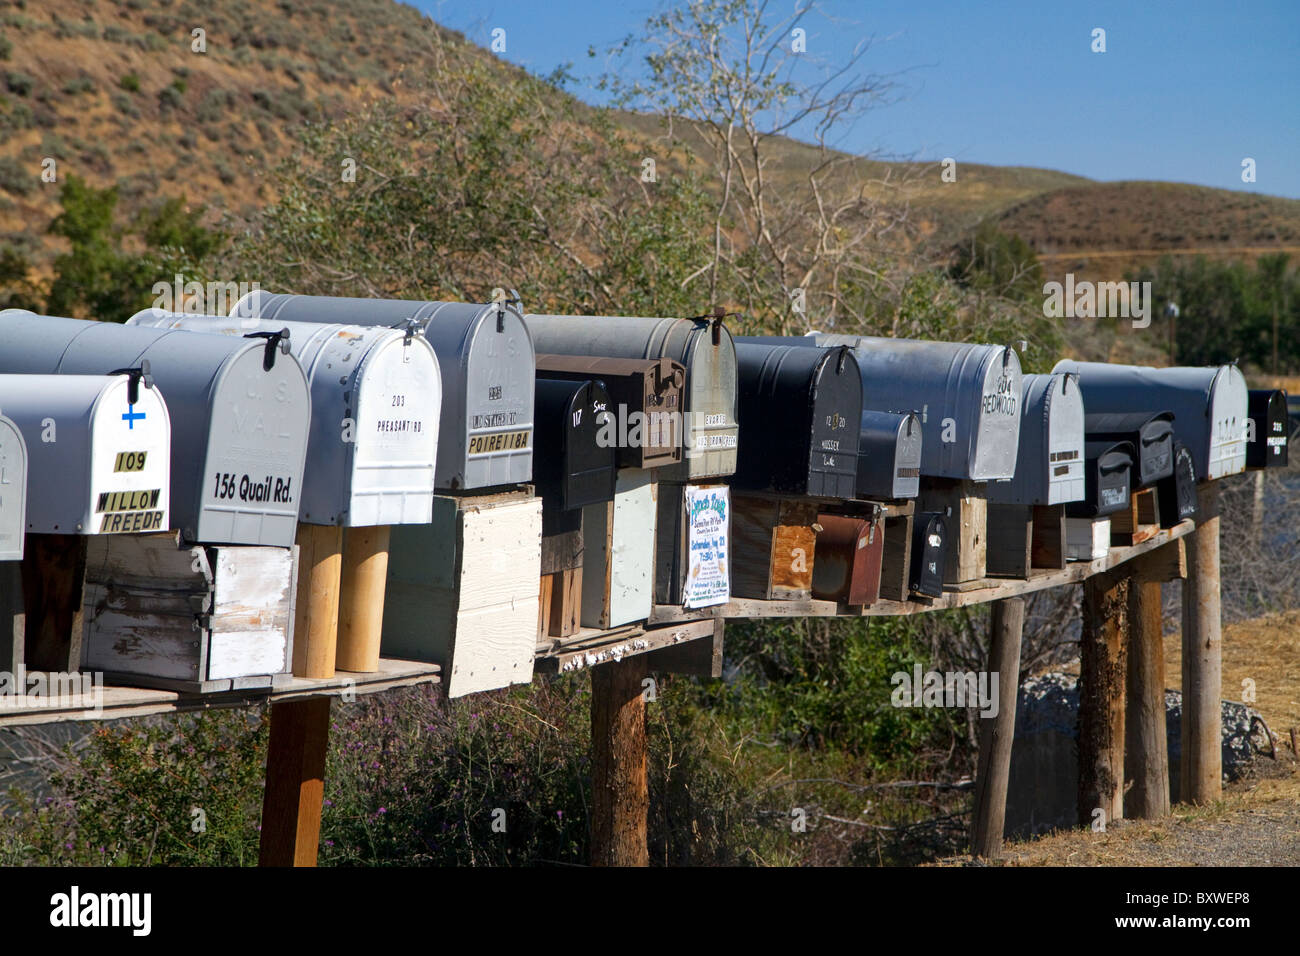 Cassette postali schierate per la consegna della posta in una zona rurale vicino Challis, Idaho, Stati Uniti d'America. Foto Stock